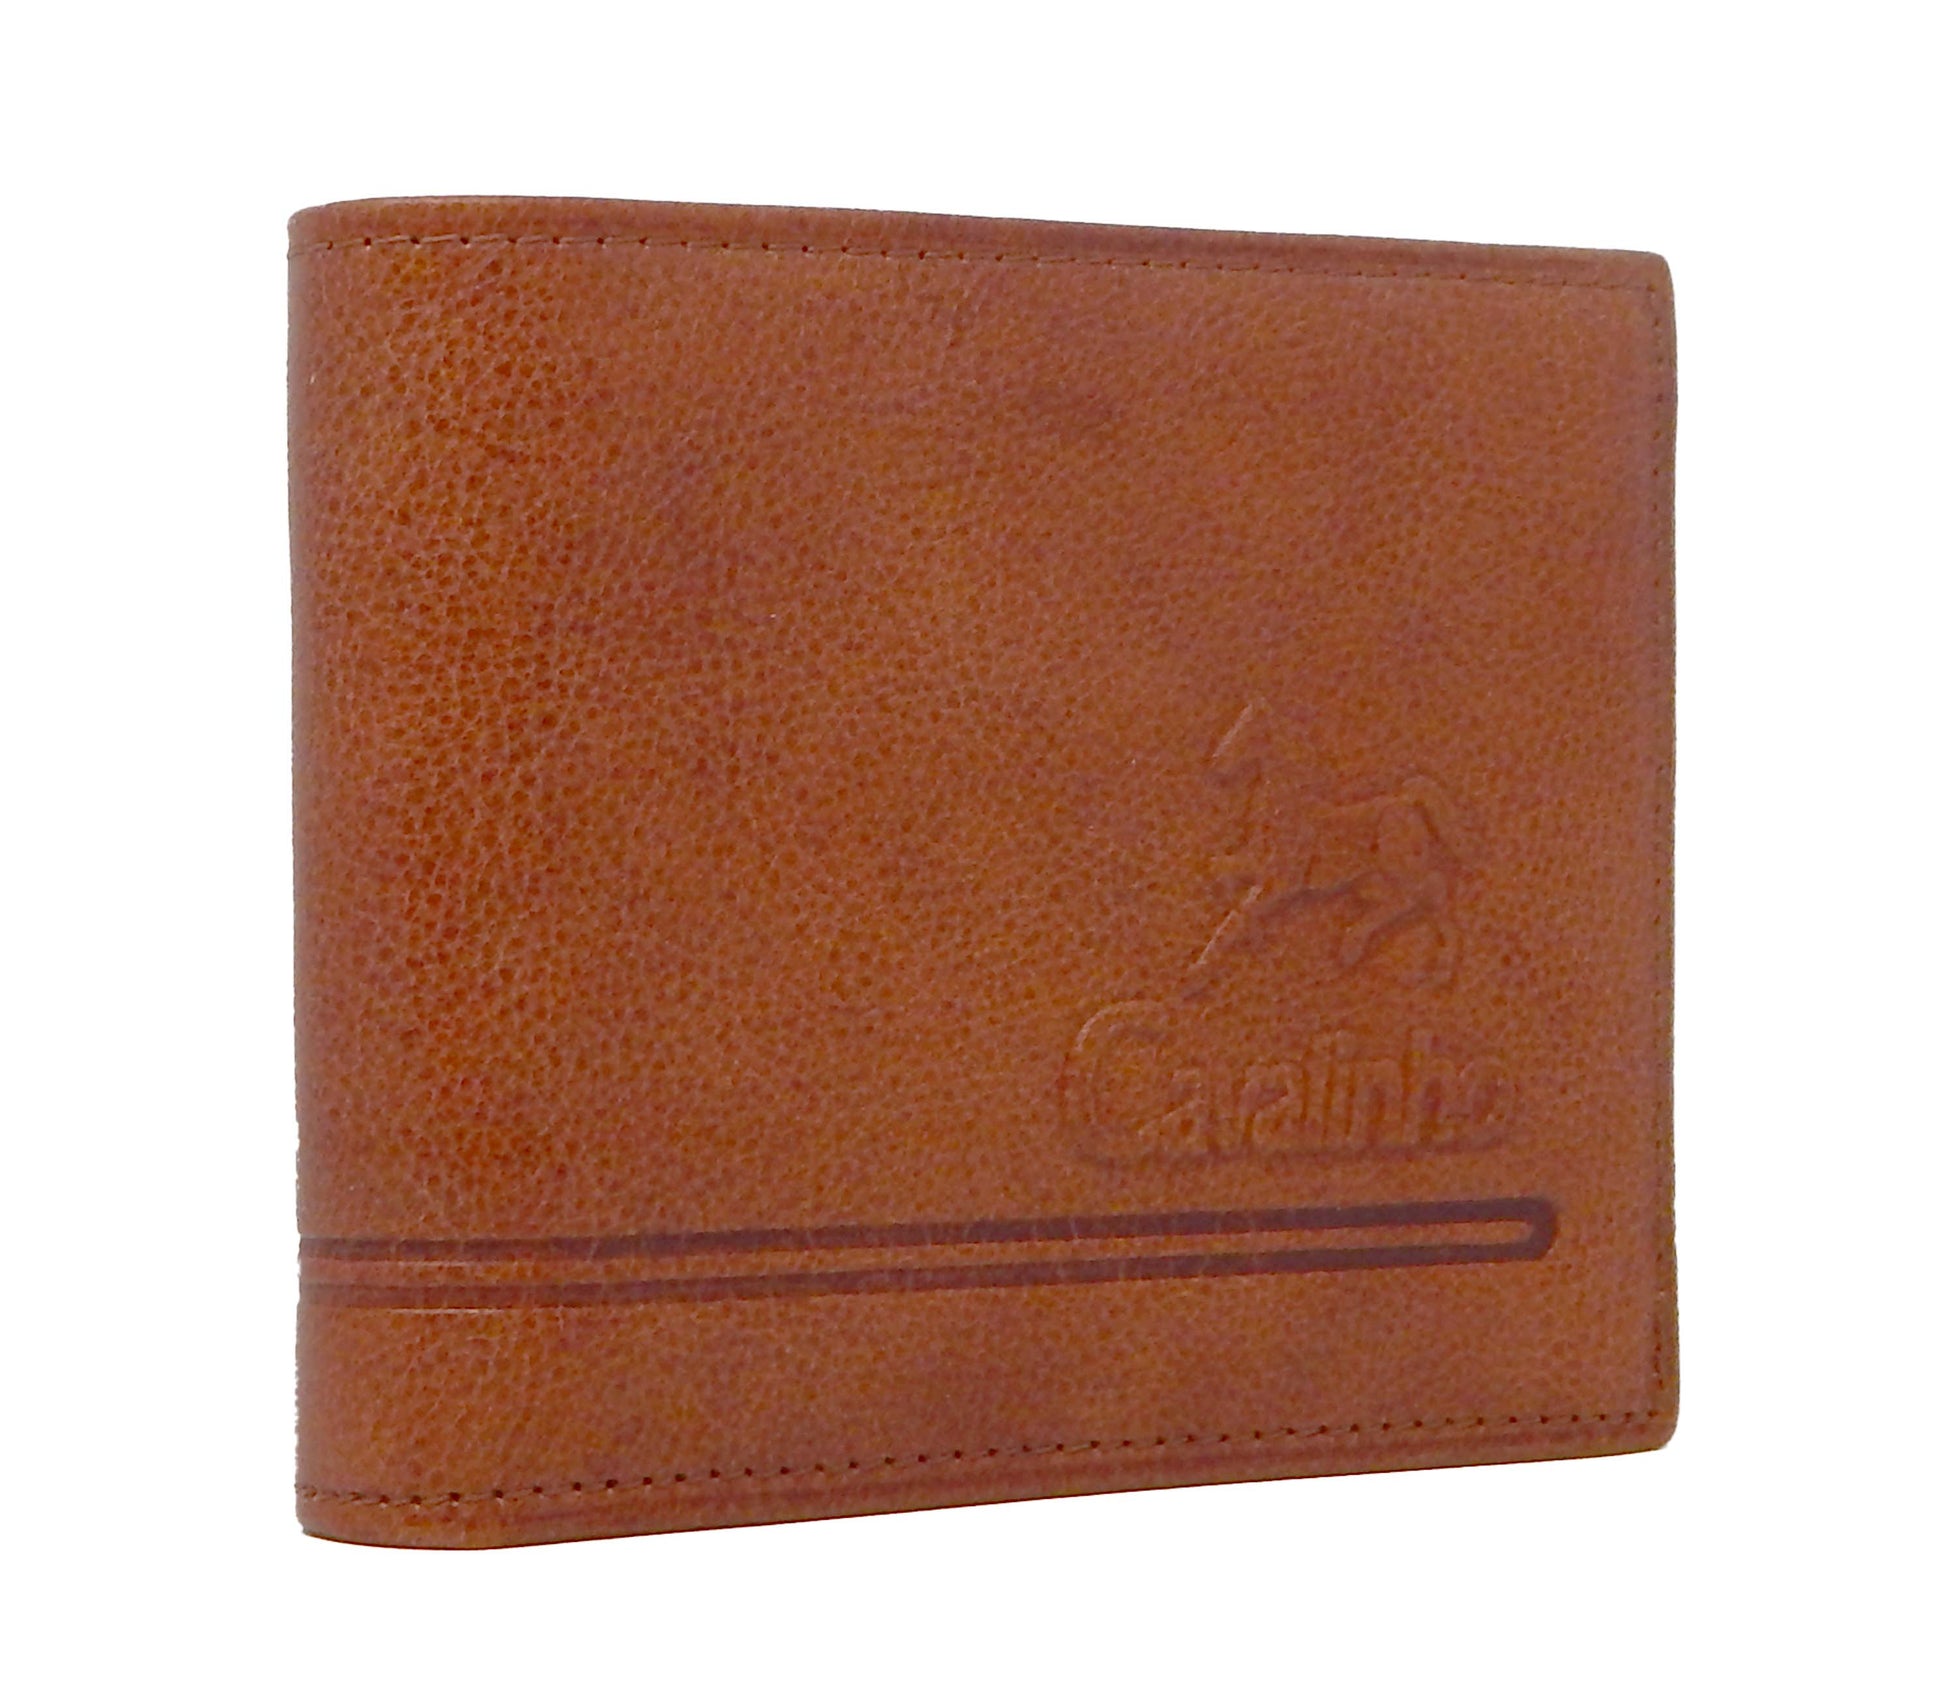 Cavalinho Men's Trifold Leather Wallet - SaddleBrown - 28610505.13.99_2